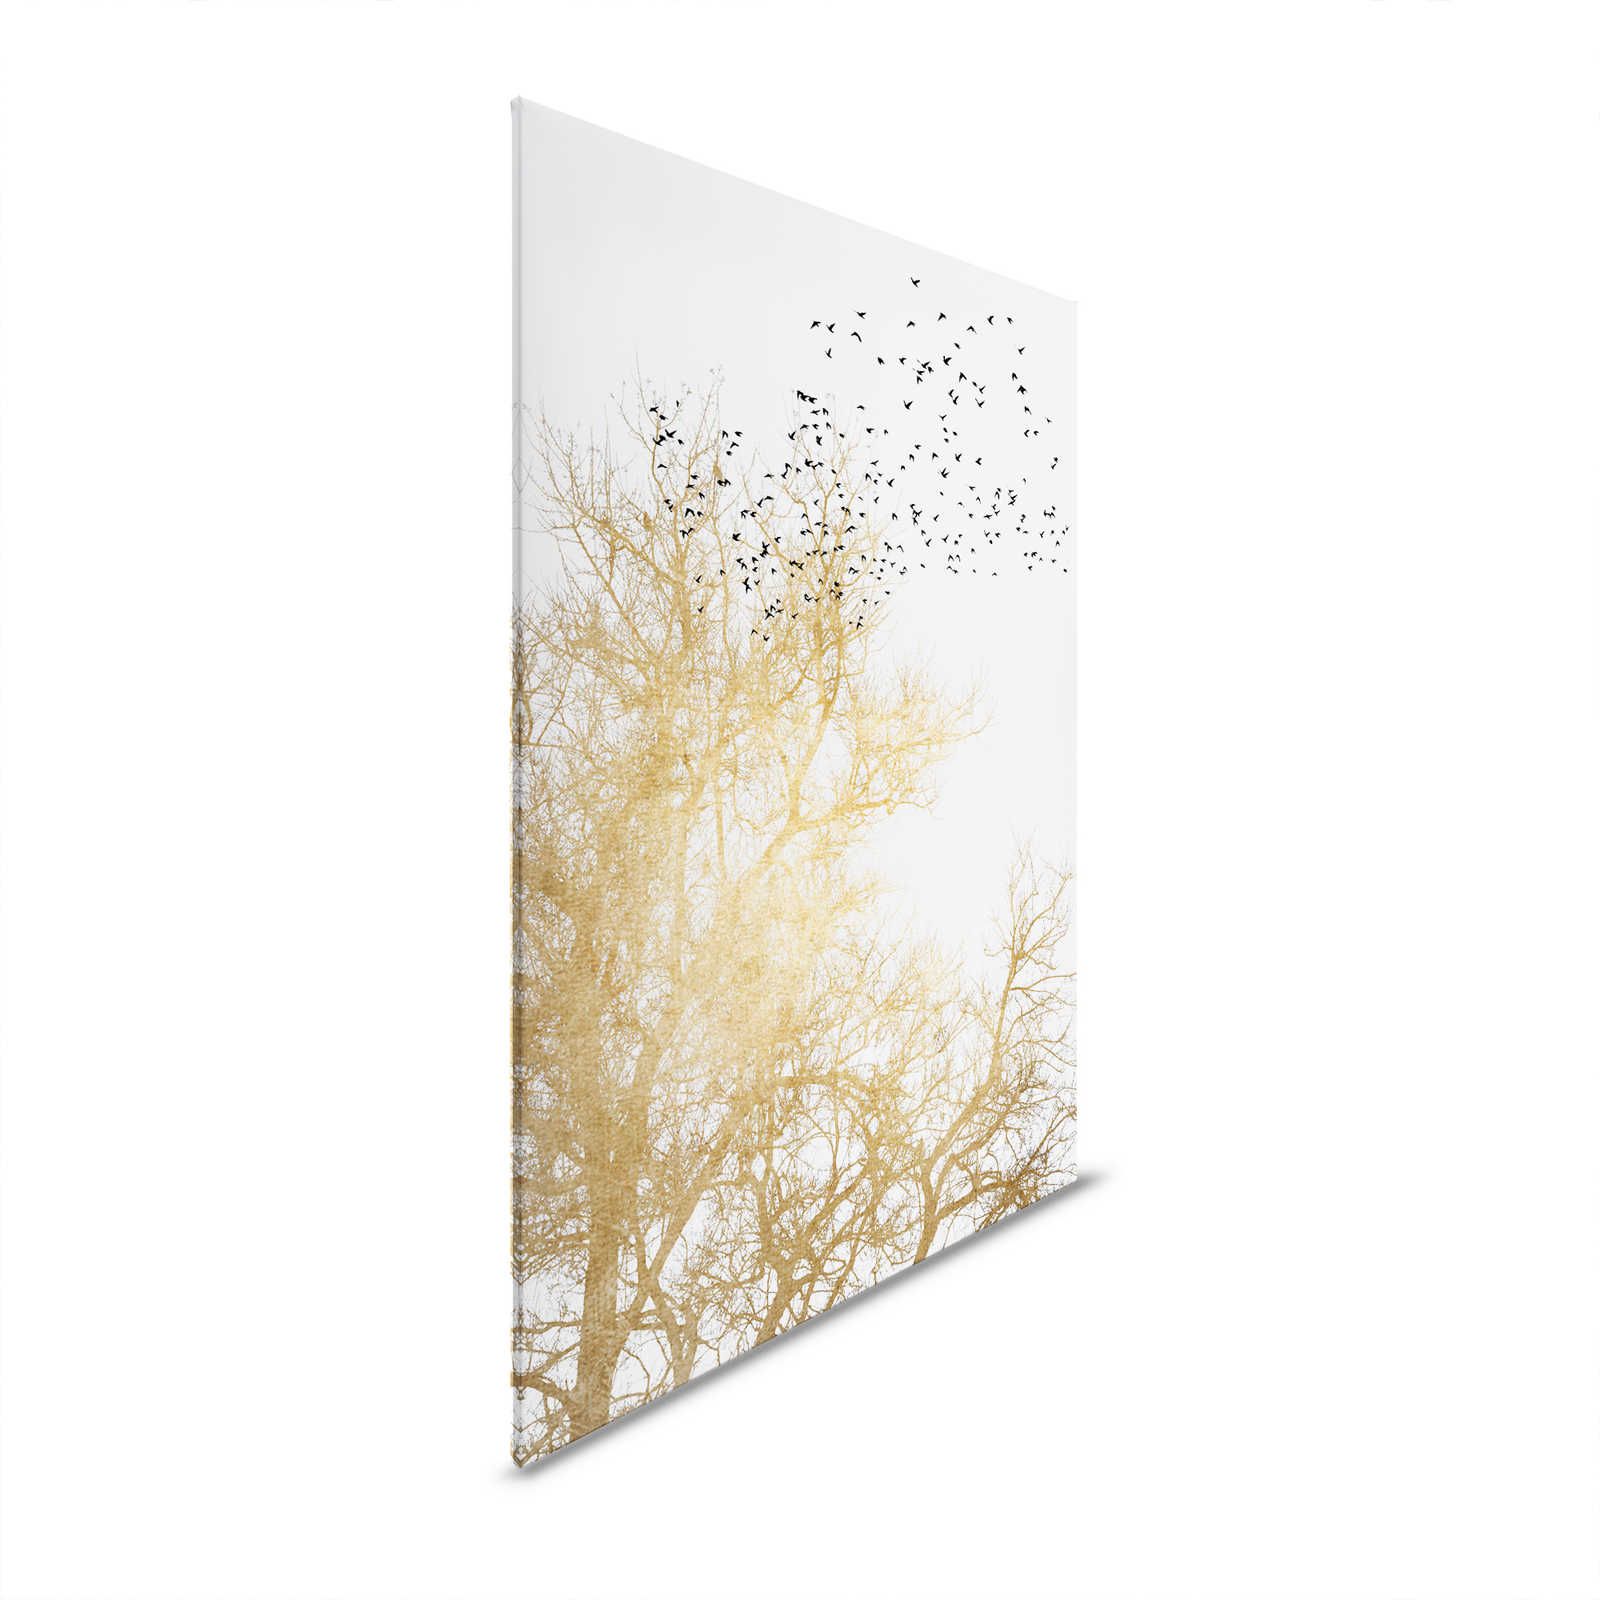 Quadro su tela con alberi dorati e stormo di uccelli - 0,90 m x 0,60 m
